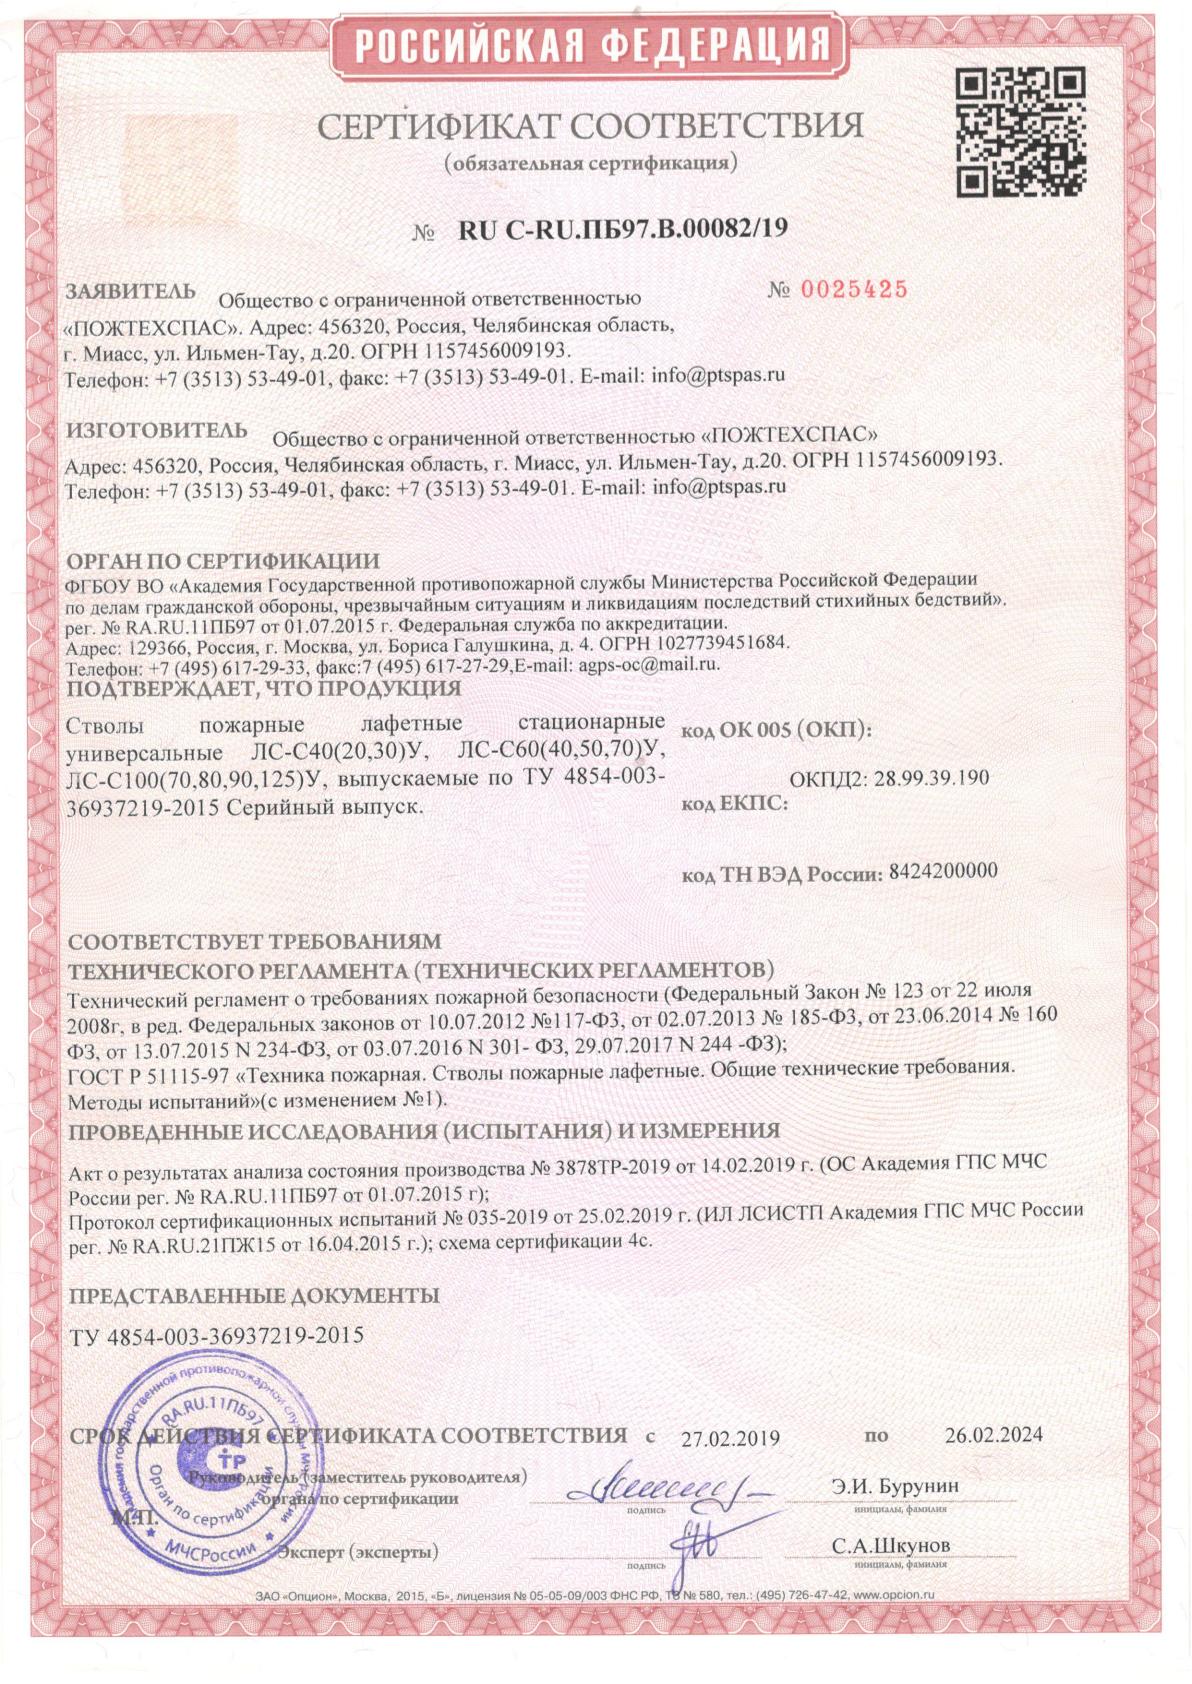 Сертификат соответствия стволы пожарные лафетные стационарные универсальные ЛС-С40 (20,30)У, 